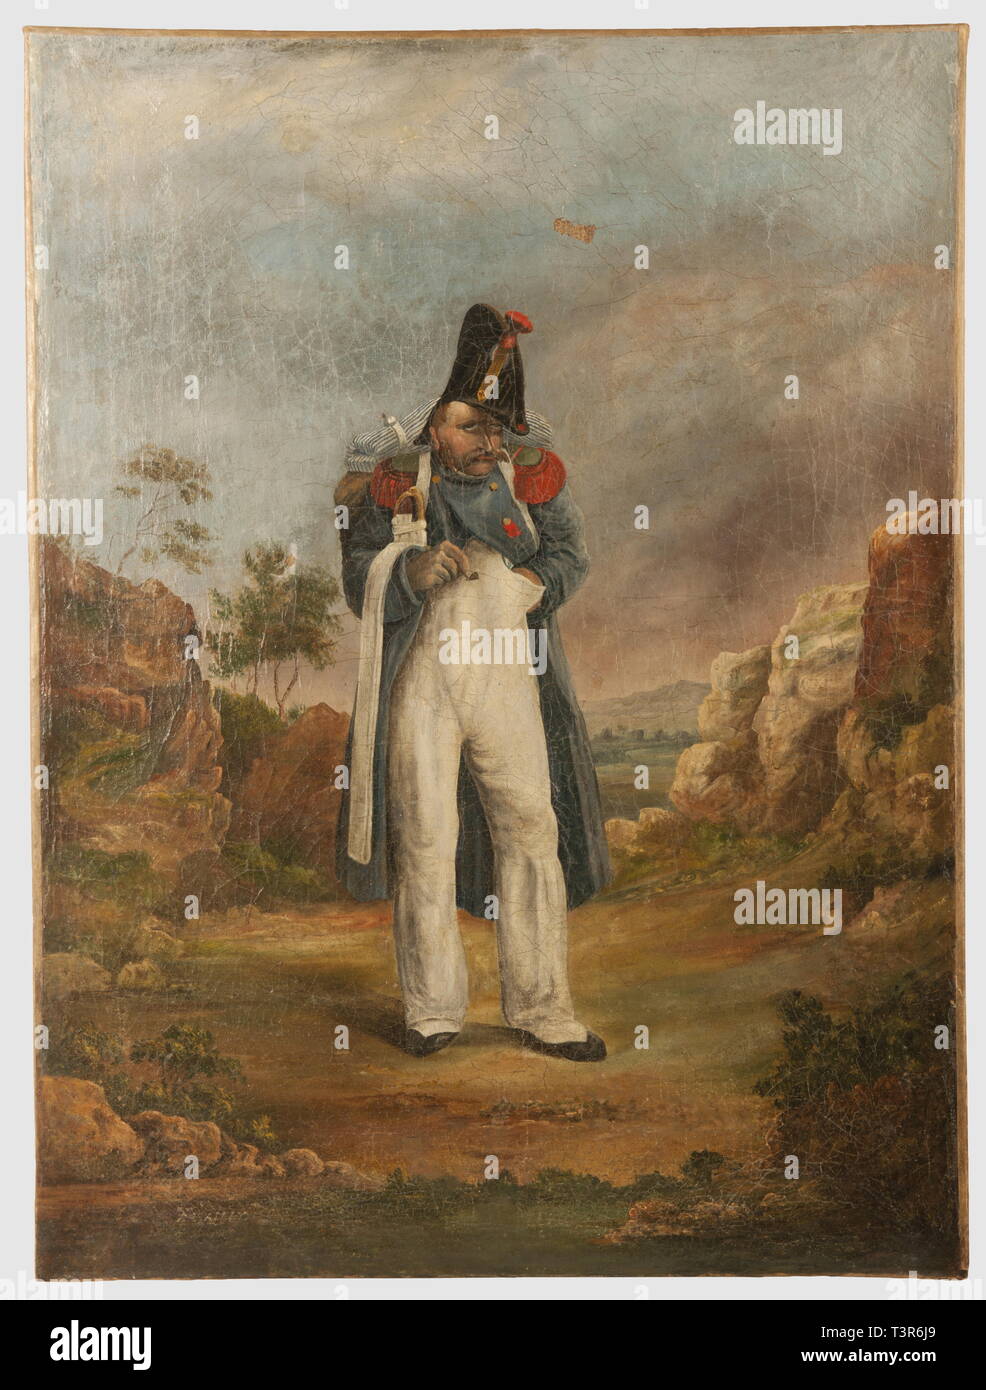 DIRECTOIRE-CONSULAT-EMPIRE 1795-1814, huile sur toile, signée L. Bailly, représentant un chasseur à pied de la Vieille Garde Impériale sur fond de paysage de type elbois. L'homme est habillé de sa capote de drap bleu ornée d'épaulettes à corps vert et tournantes rouges, arbore le ruban de l'Ordre de la Légion d'Honneur, porte un pantalon de toile blanche en route, est coiffé de son bicorne et tient sa banderole et son sabre briquet sous le bras droit. L'air désabusé et fils pensif fait penser au séjour de l'Empereur sur l'île d'Elbe. Hauteur 87 cm, Additional-Rights Clearance-Info-l,-Not-Available Banque D'Images